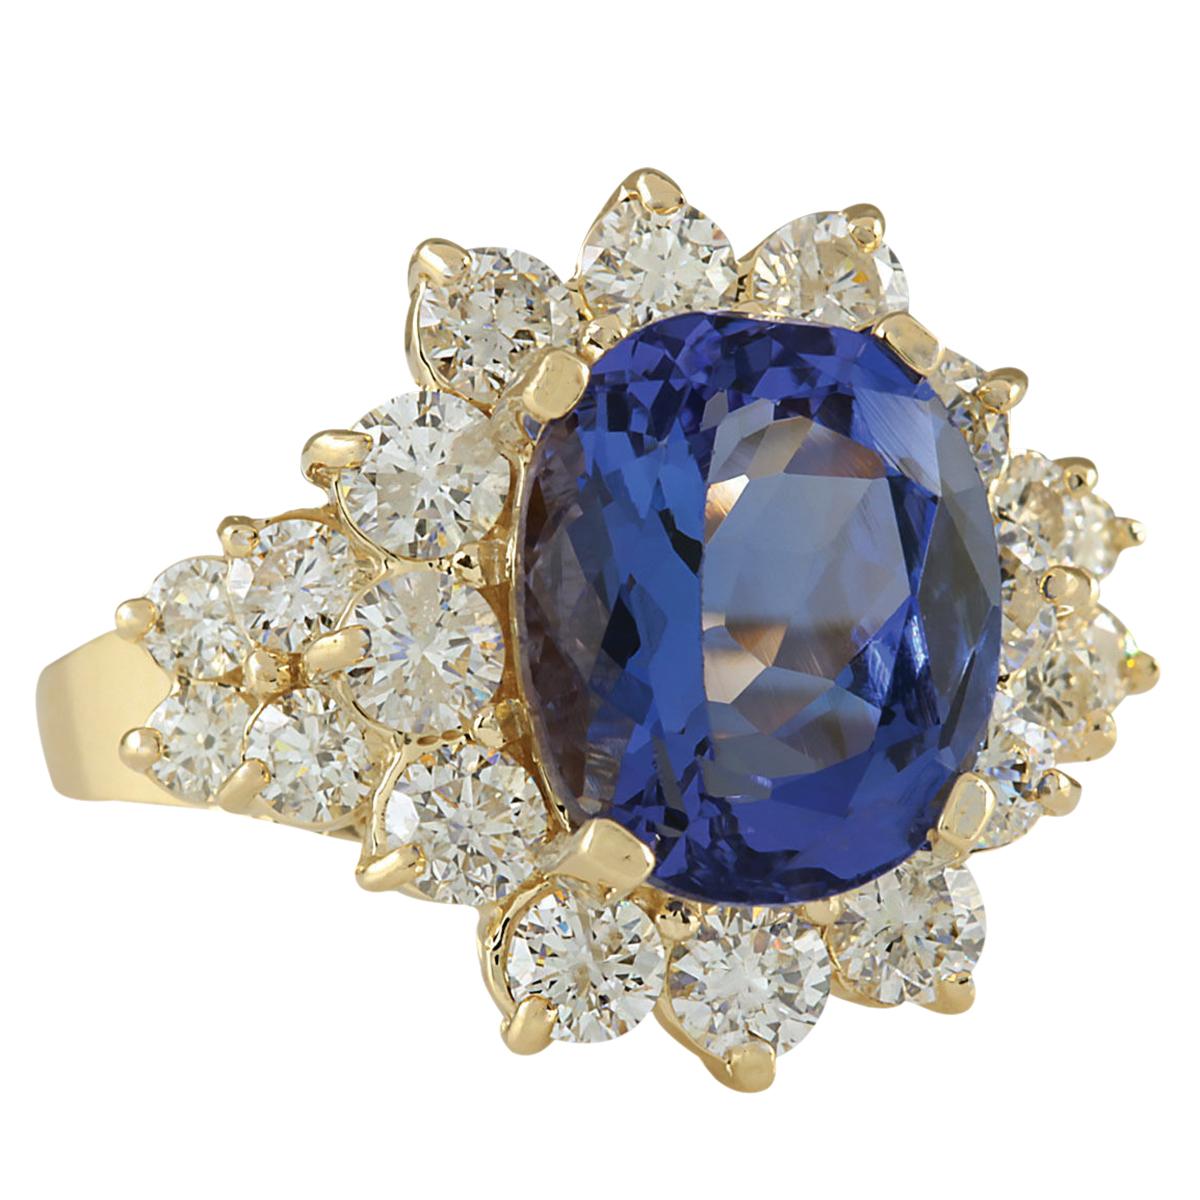 6.75 Carat Tanzanite 14 Karat Yellow Gold Diamond Ring
Stamped: 14K Yellow Gold
Total Ring Weight: 5.1 Grams
Total  Tanzanite Weight is 5.10 Carat (Measures: 11.00x9.00 mm)
Color: Blue
Total  Diamond Weight is 1.65 Carat
Color: F-G, Clarity: